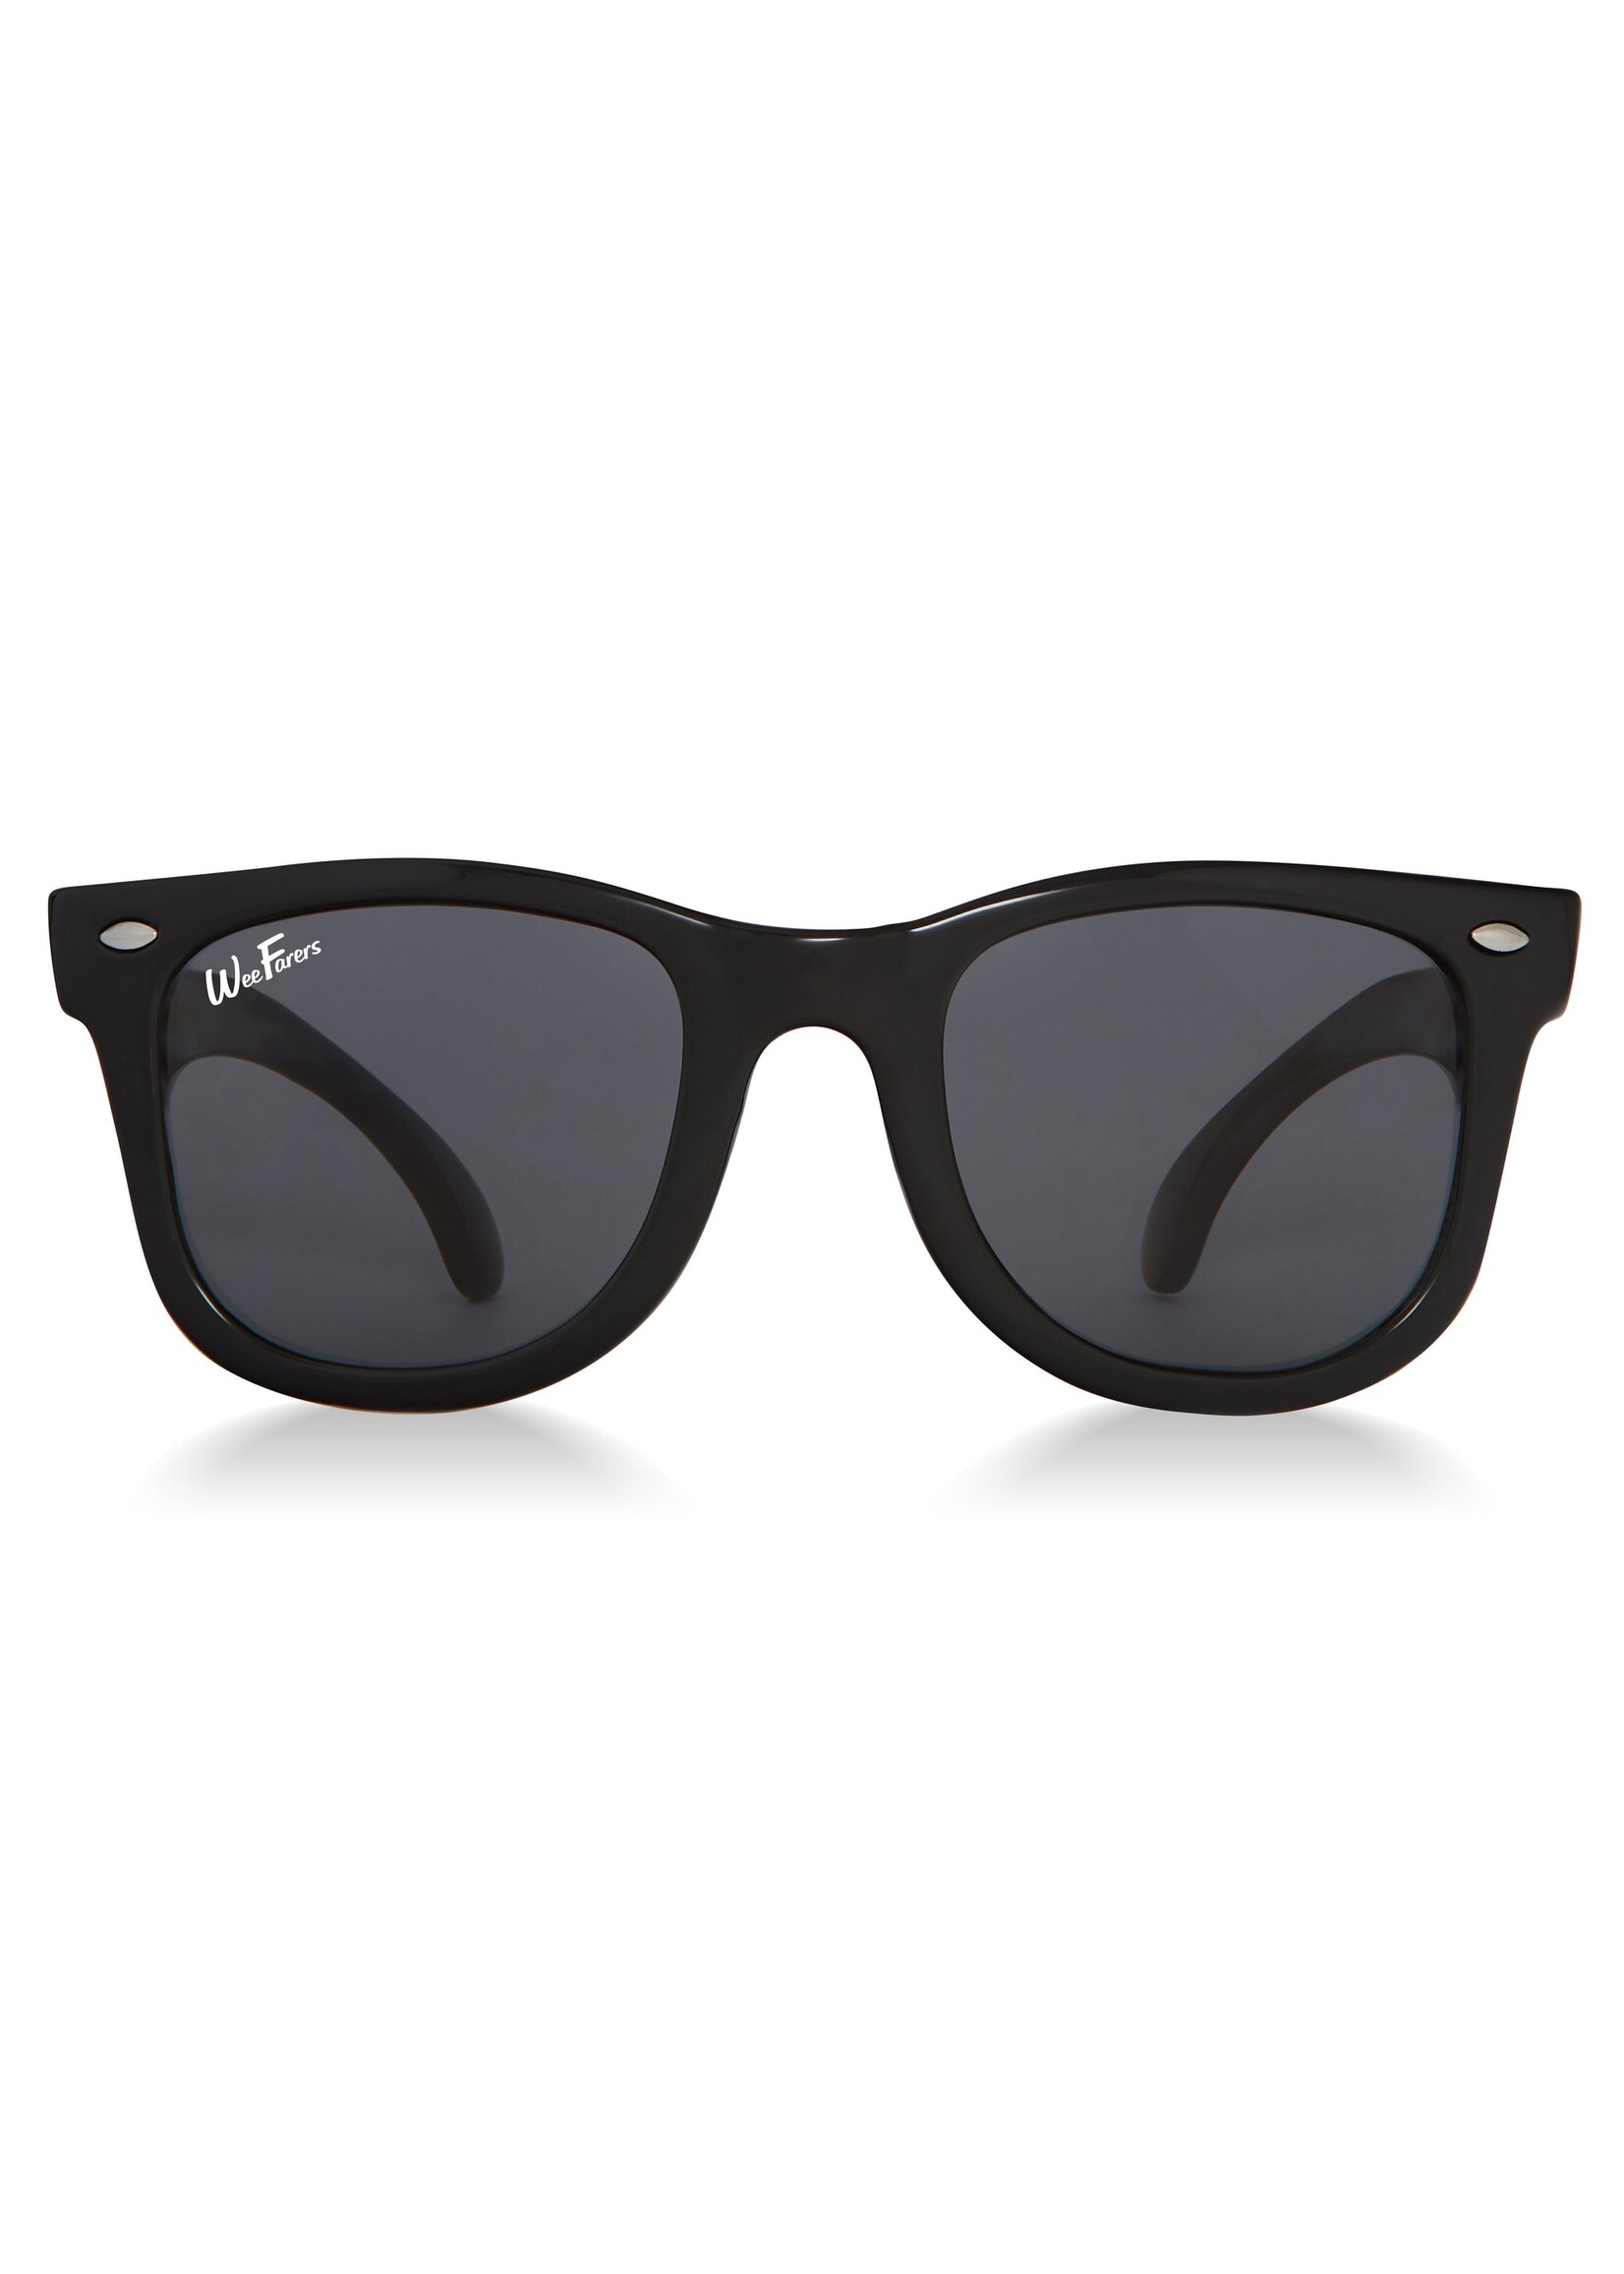 WeeFarers WeeFarers Polarized Sunglasses - Black